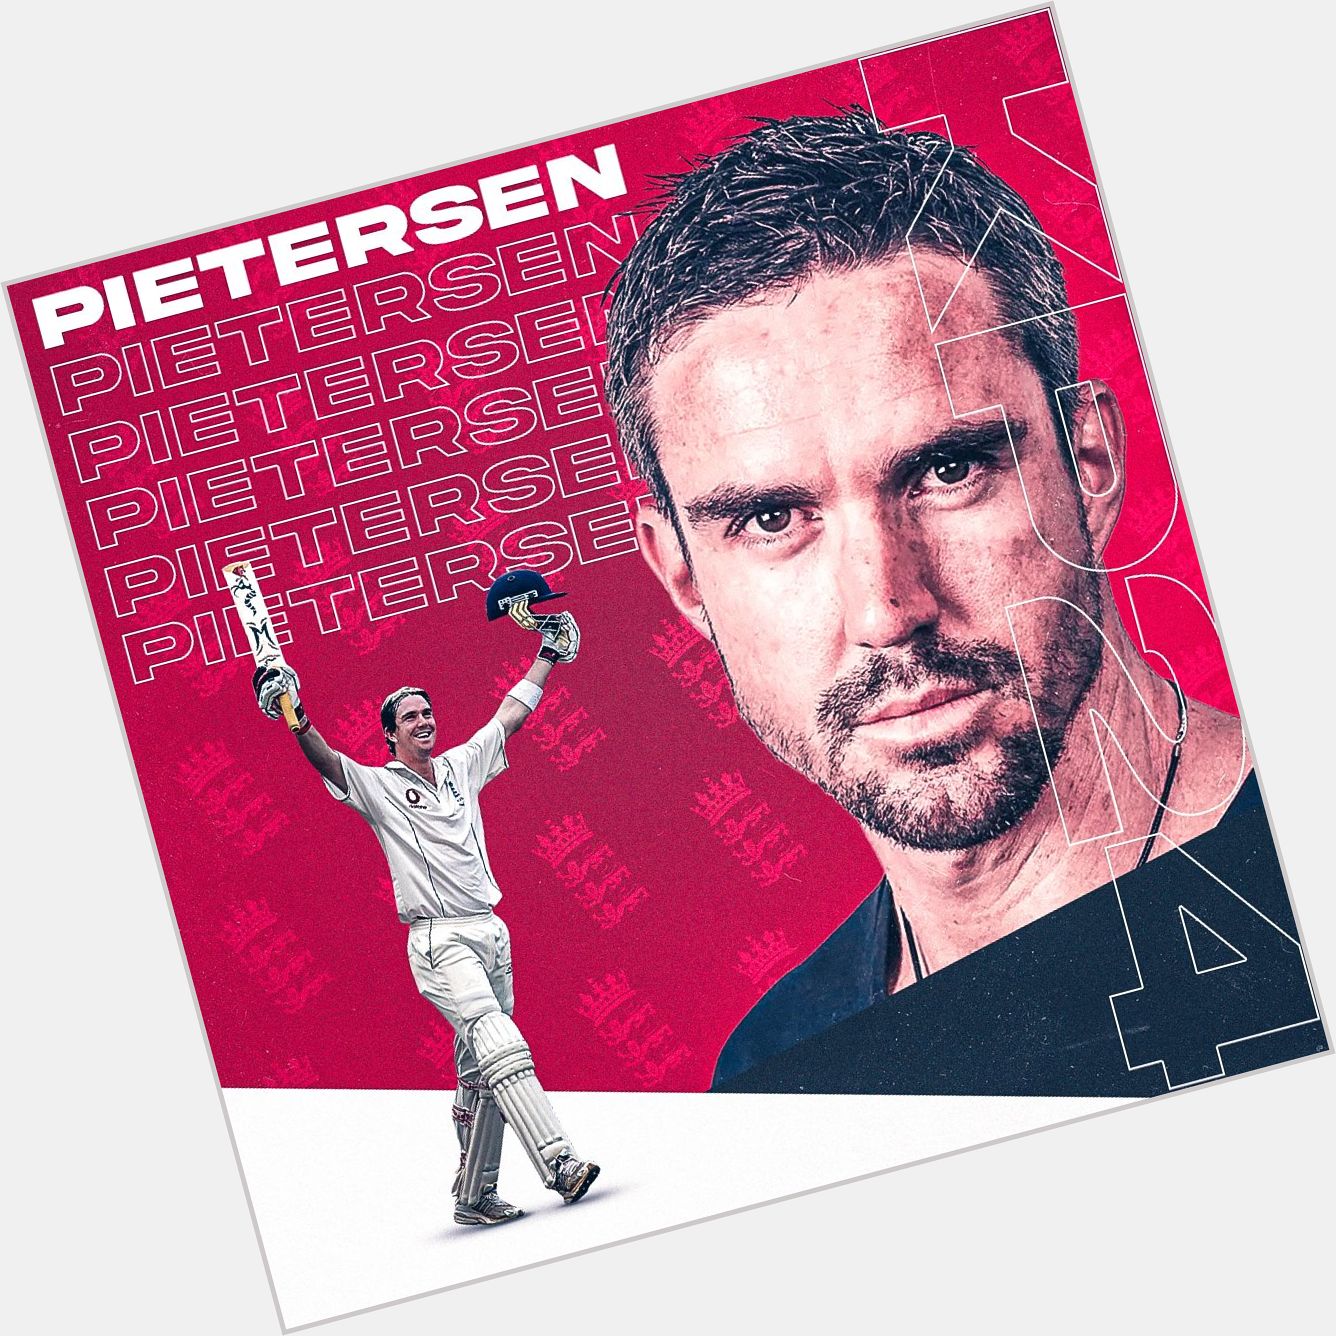 Happy birthday, Kevin Pietersen!         